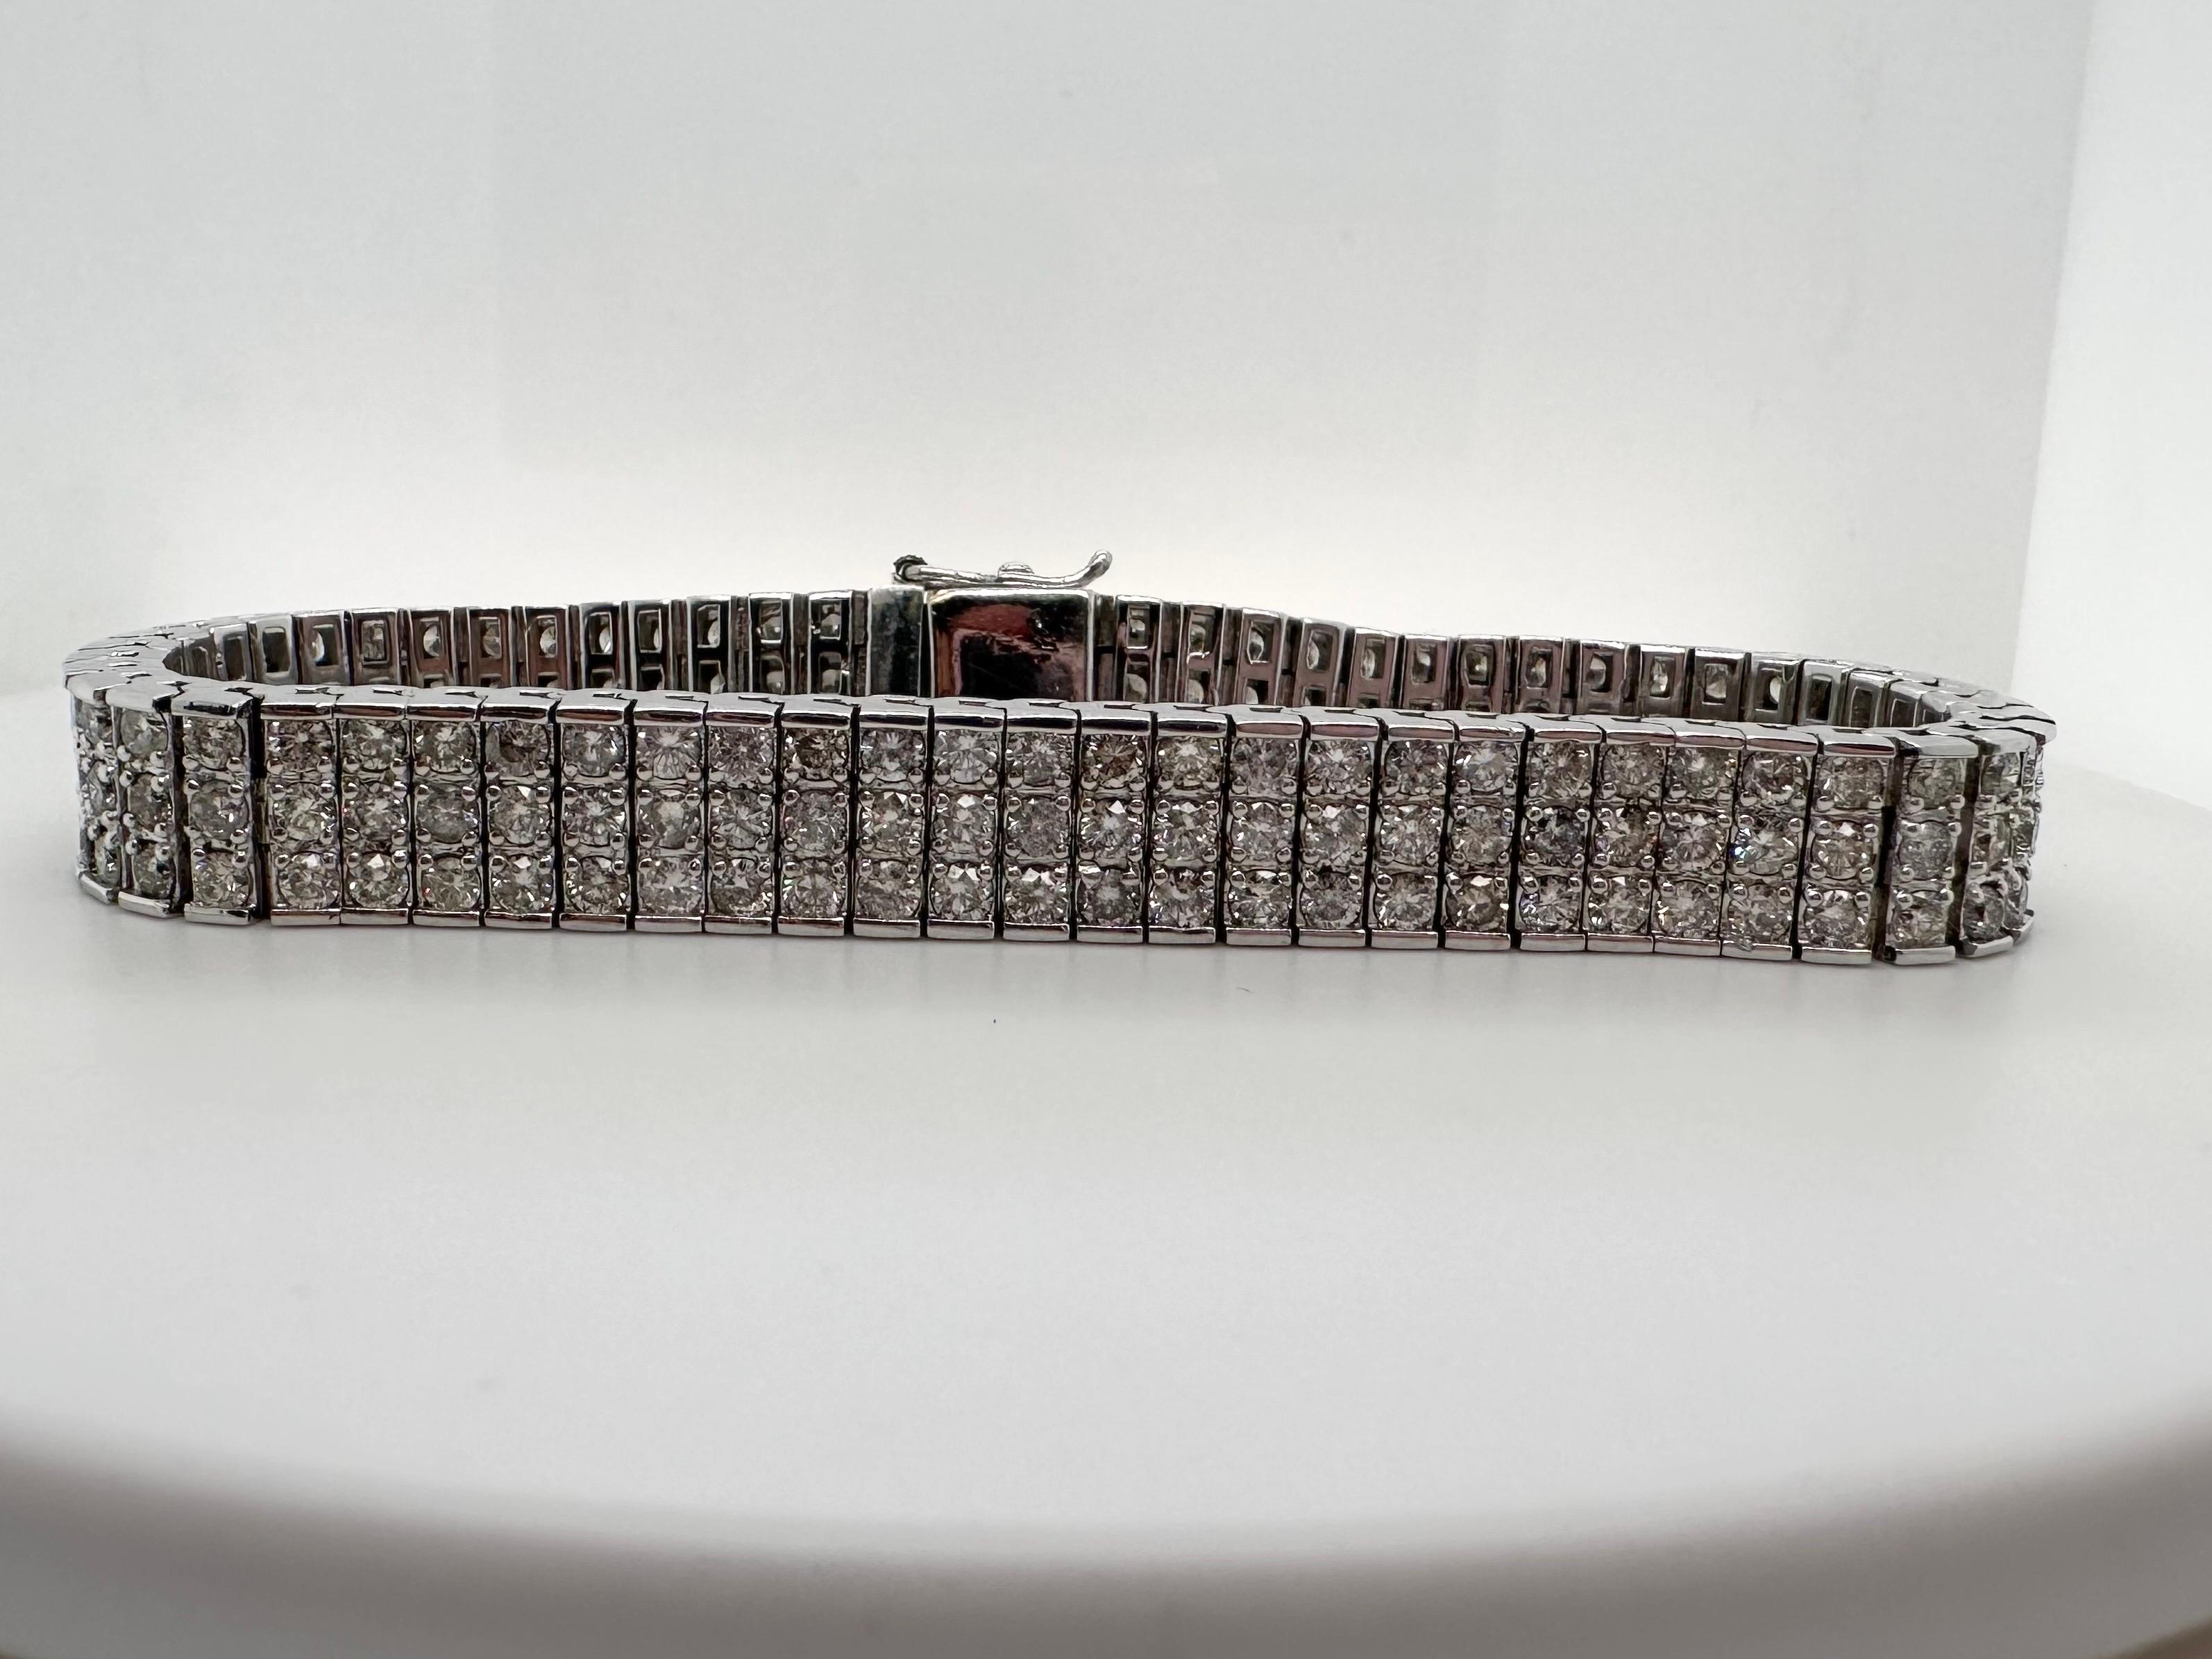 Bracelet en diamant de 12 carats-192 diamants et 60 grammes, les diamants sont de pureté VS-SI et de couleur F-G, le bracelet est très confortable avec un fermoir sécurisé, le temps de traitement pour expédier le bracelet est de 5-7 jours selon le